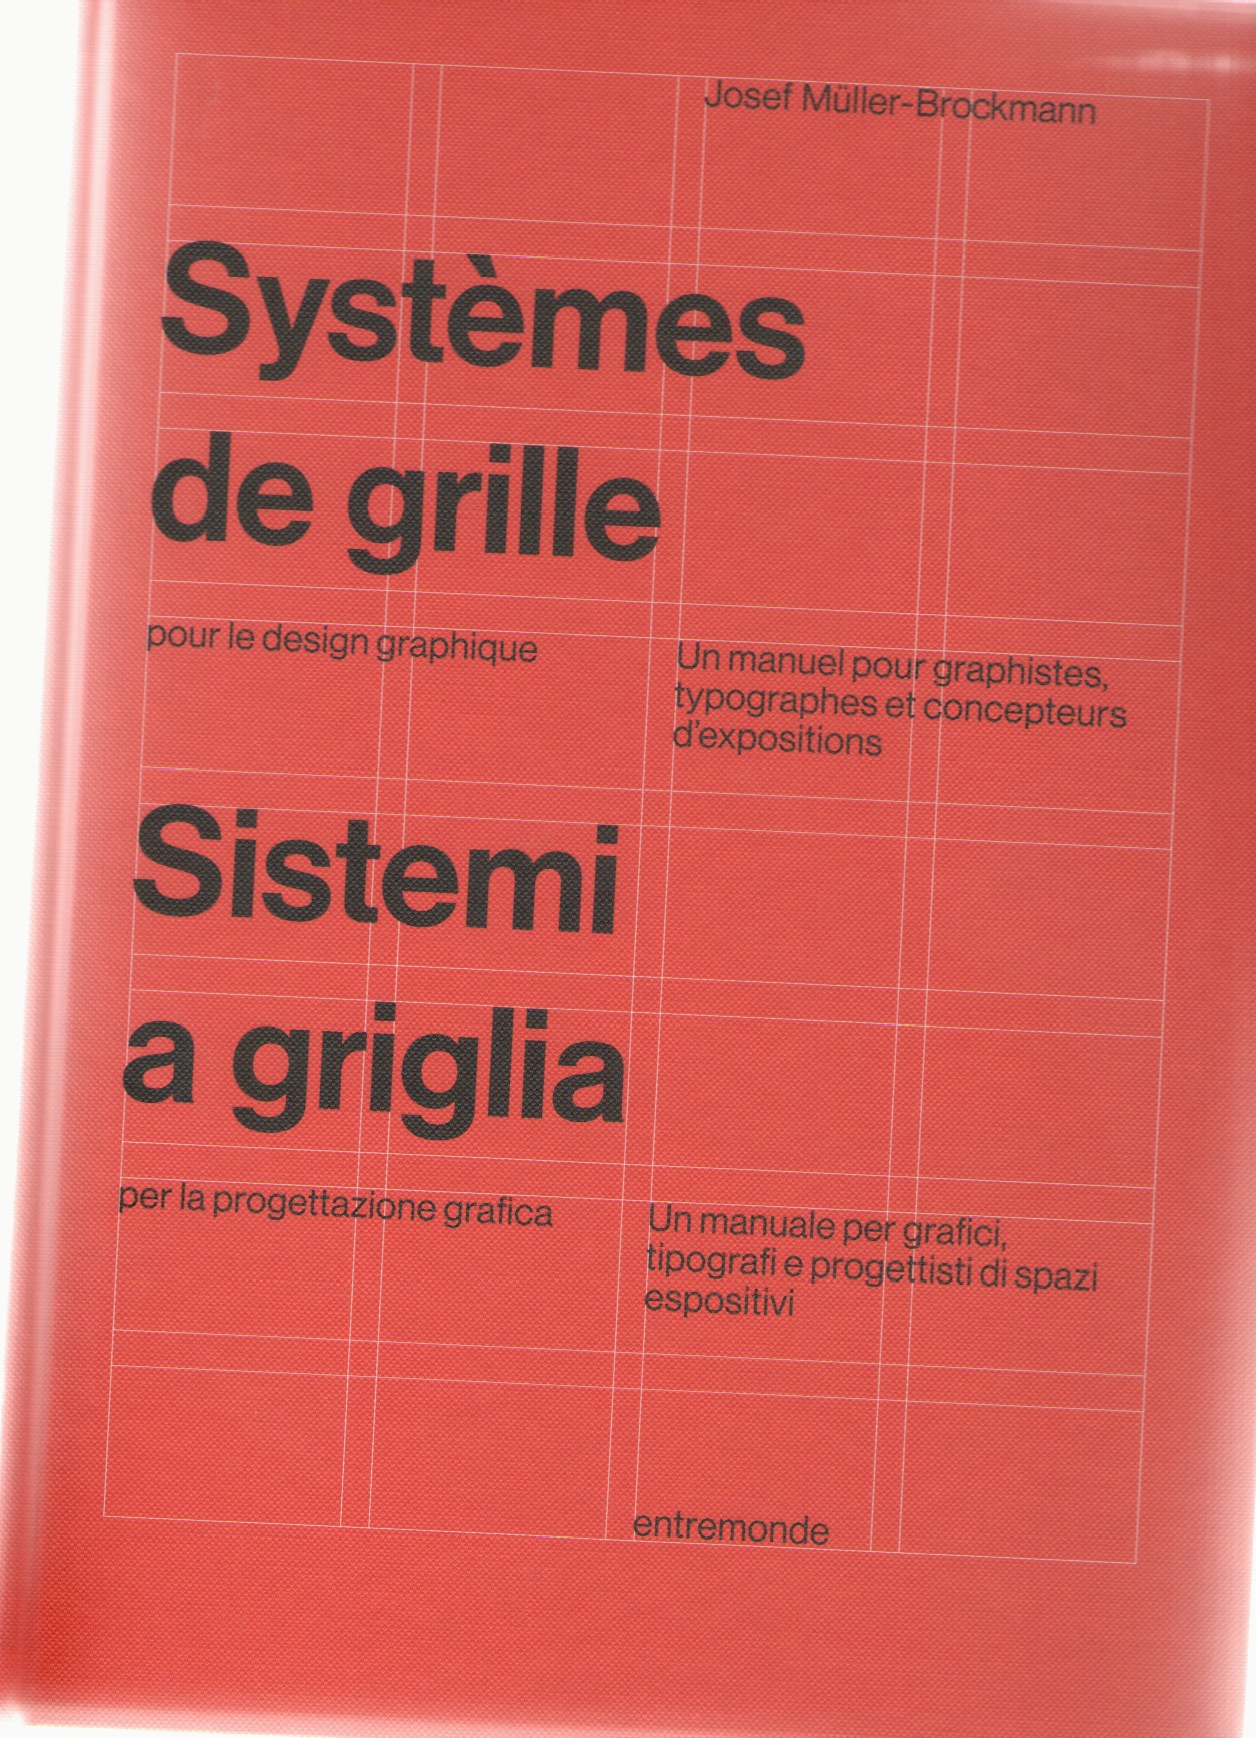 MÜLLER-BROCKMANN, Josef - Systèmes de grille pour le design graphique